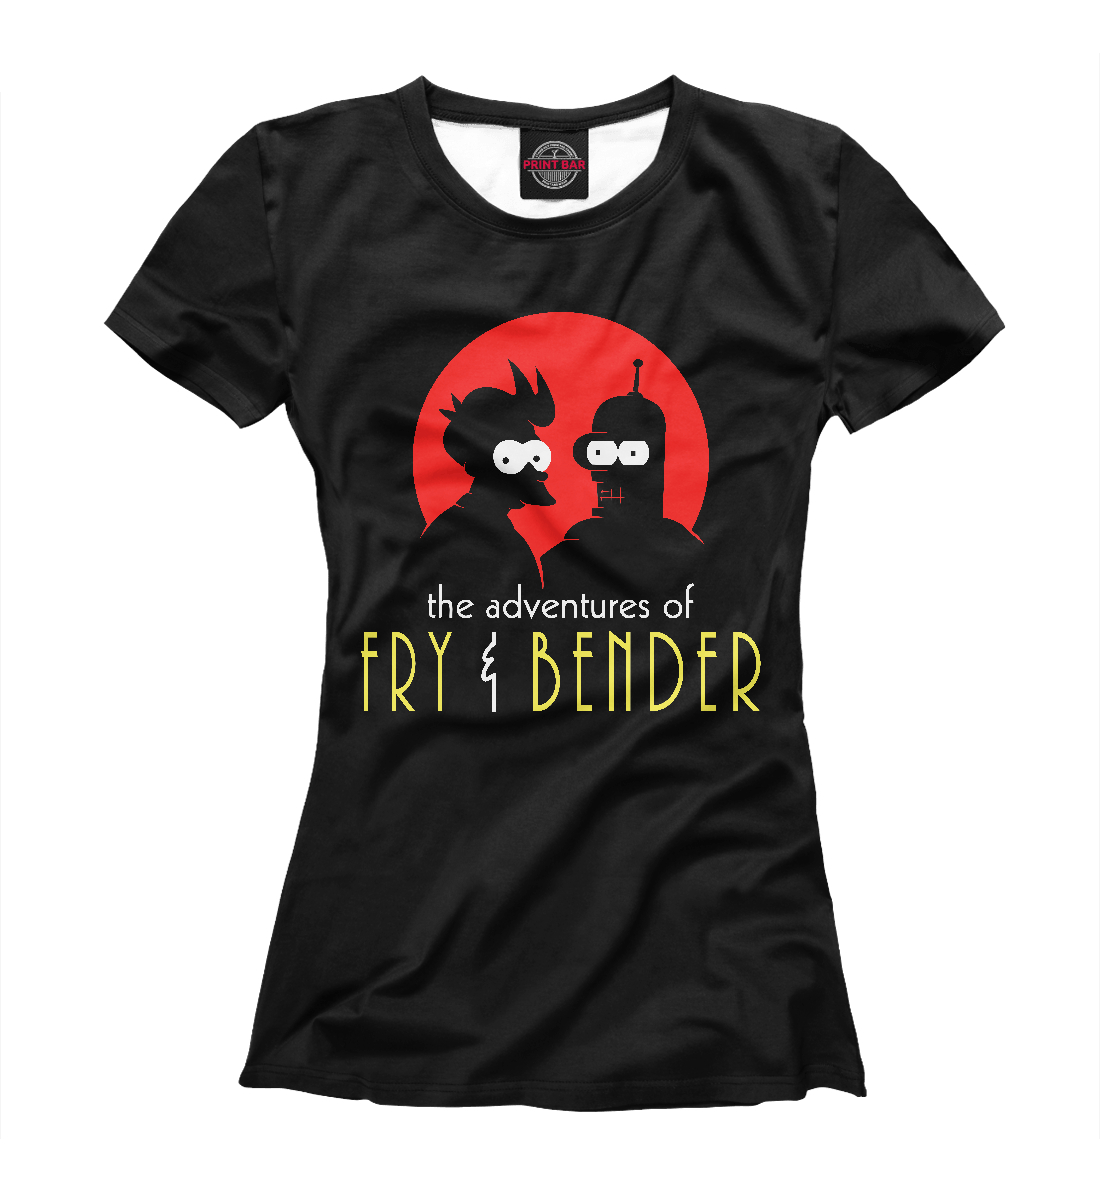 Футболка Fry & Bender для женщин, артикул: FUT-340127-fut-1mp